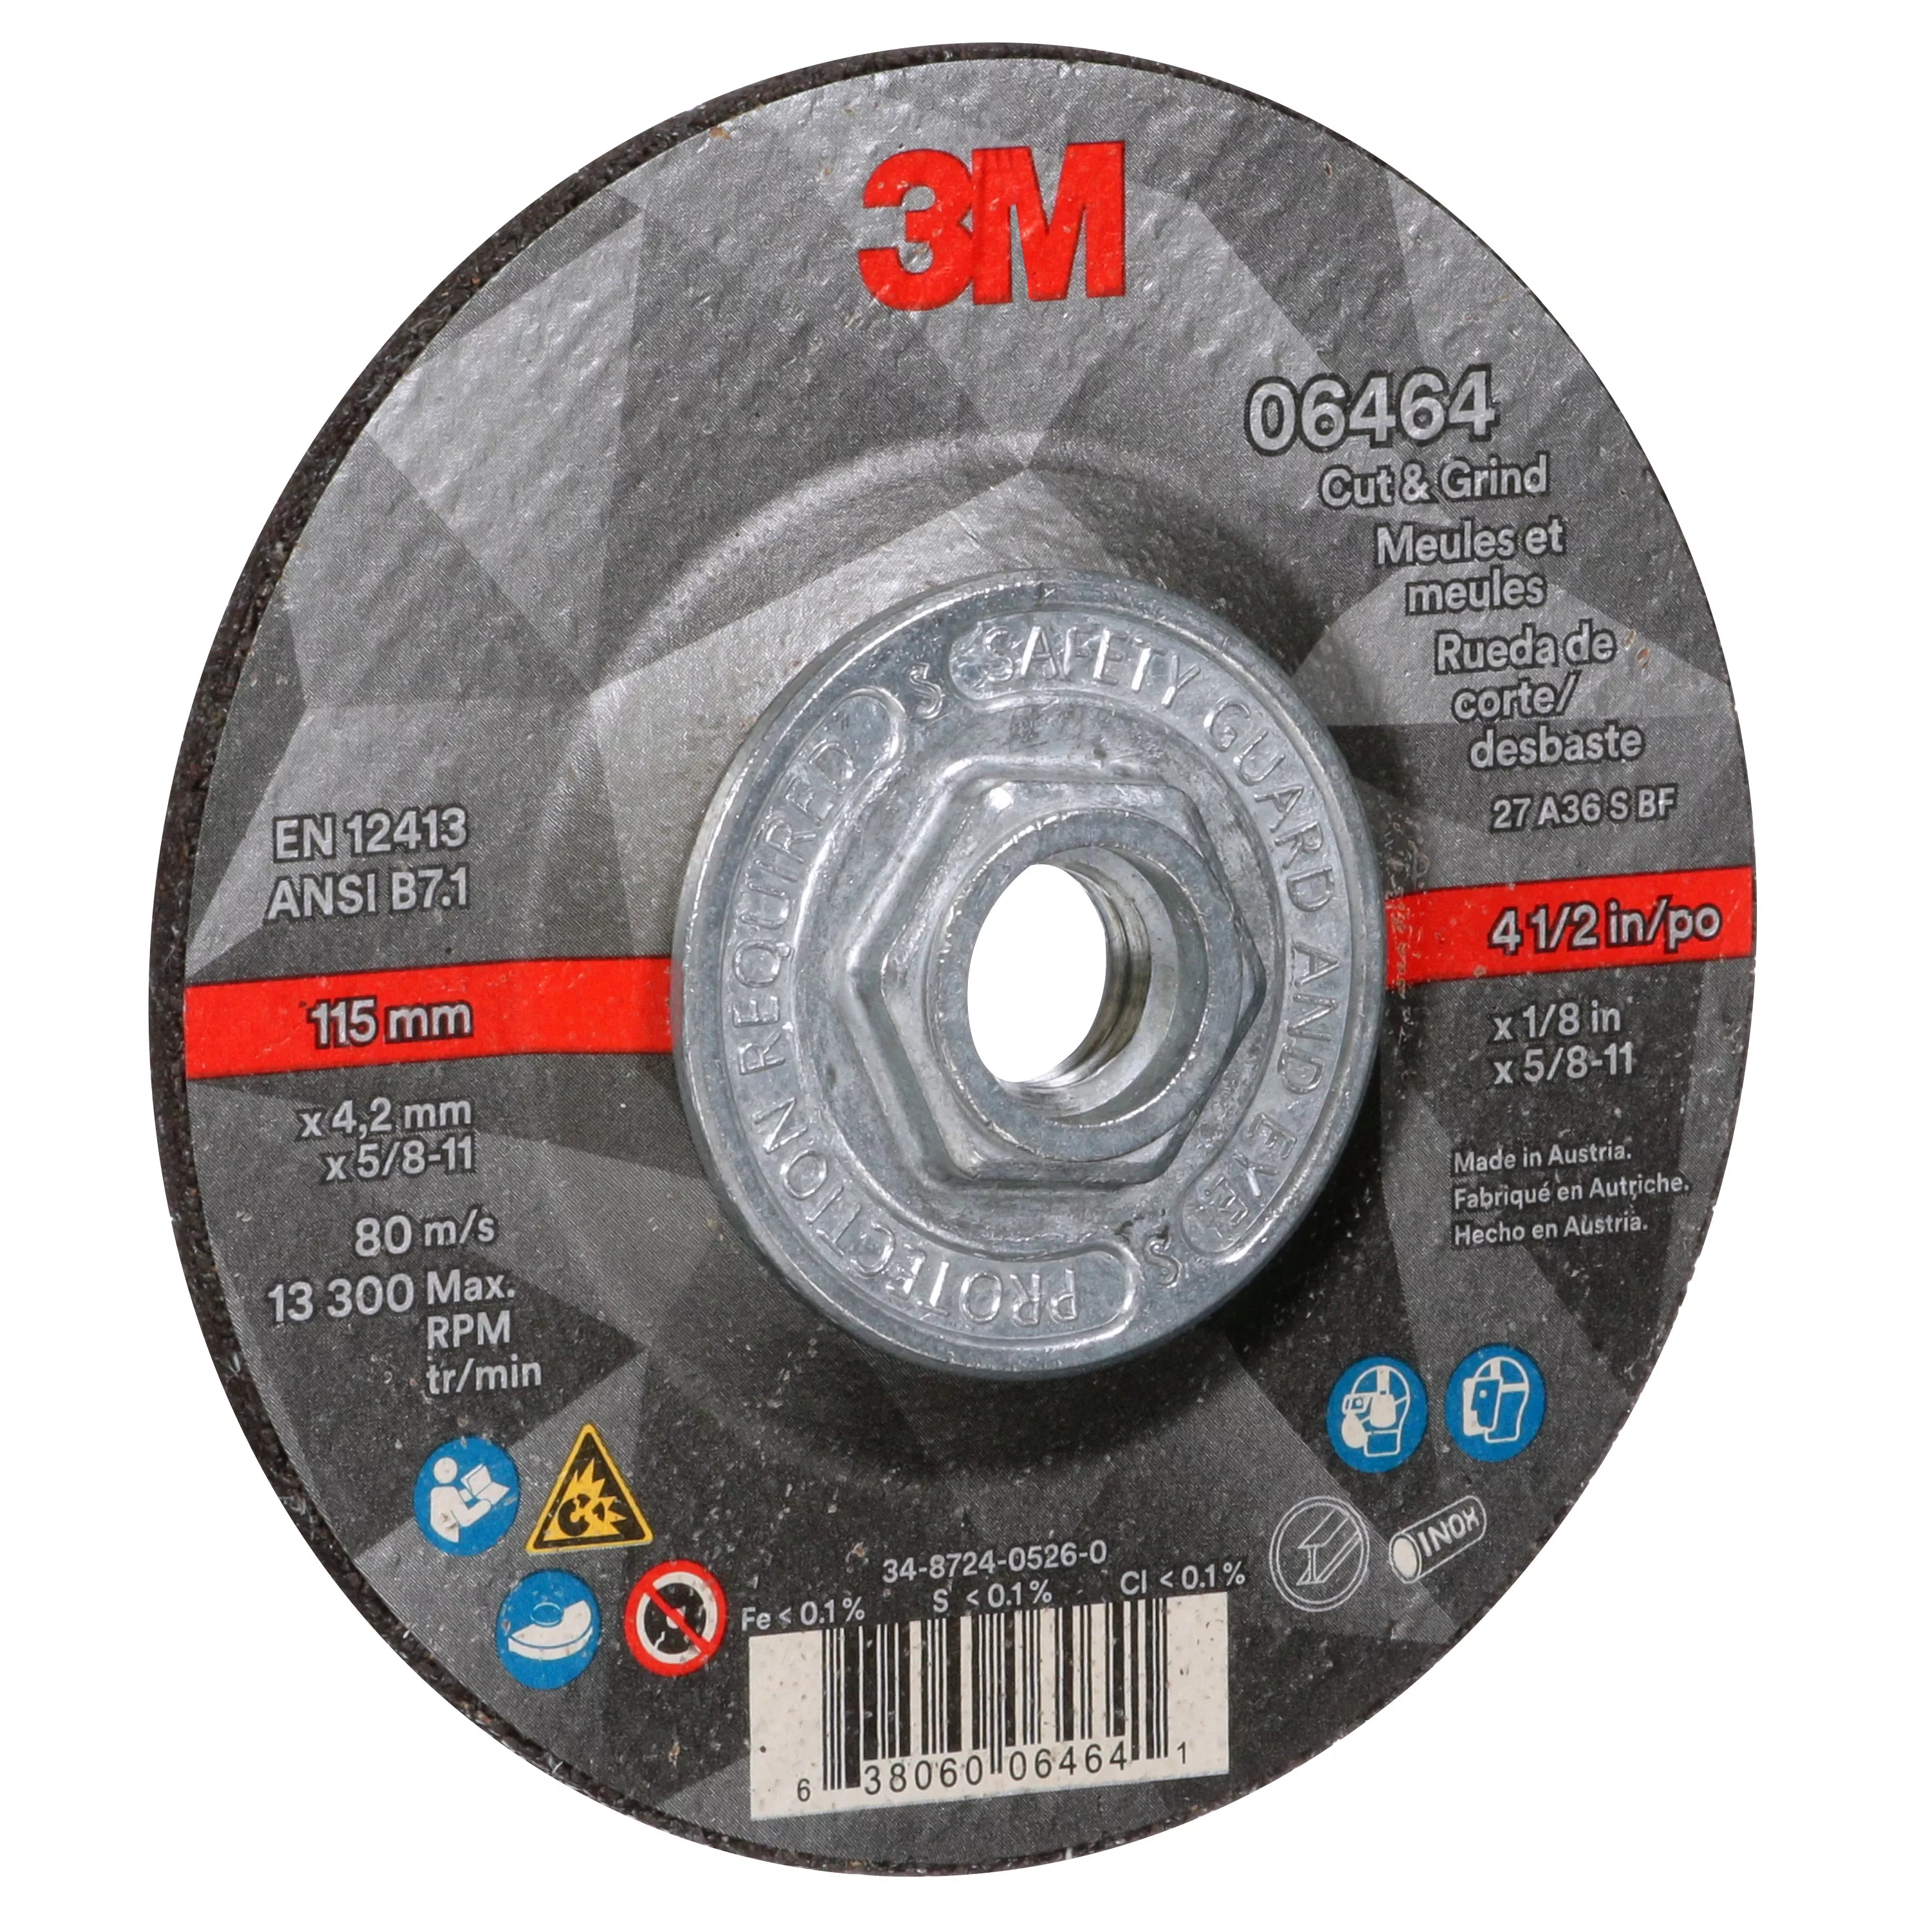 SKU 7100245014 | 3M™ Cut & Grind Wheel